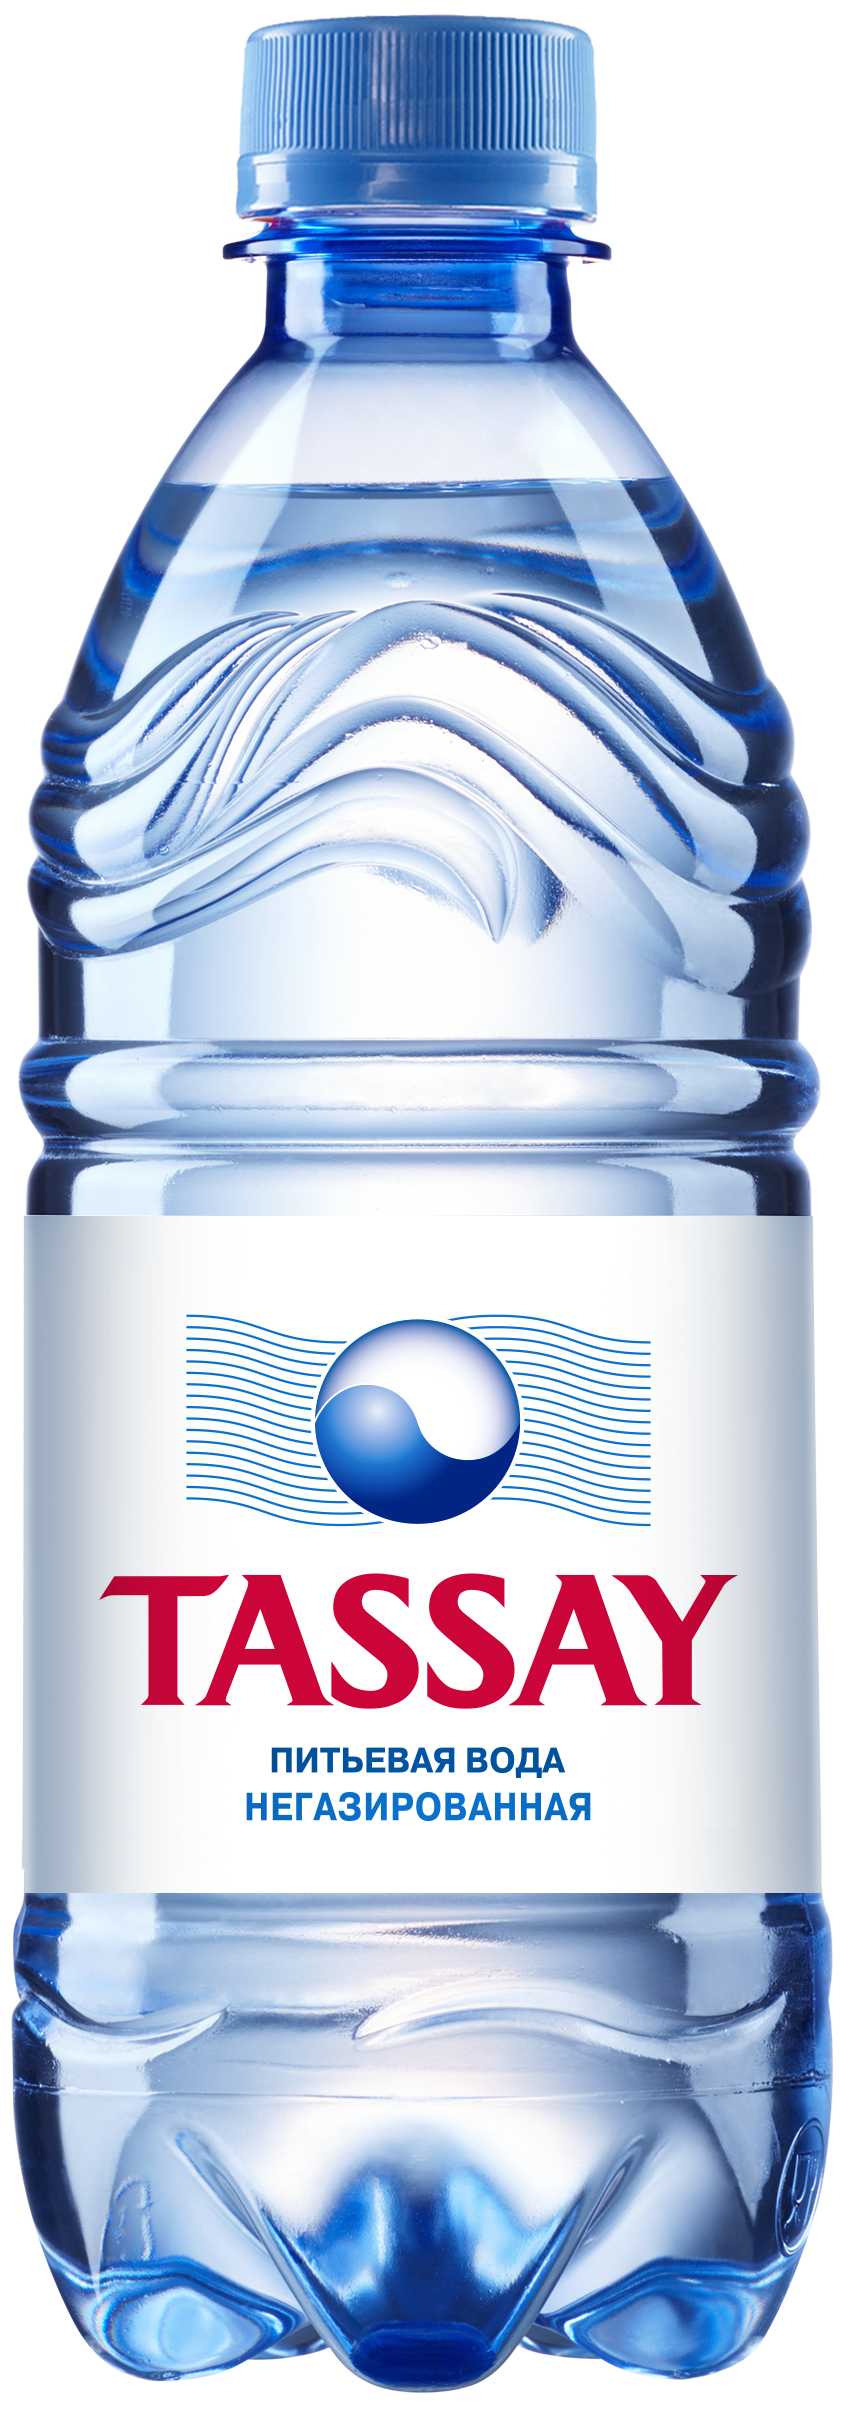 Вода питьевая Tassay негазированная 0,5 л